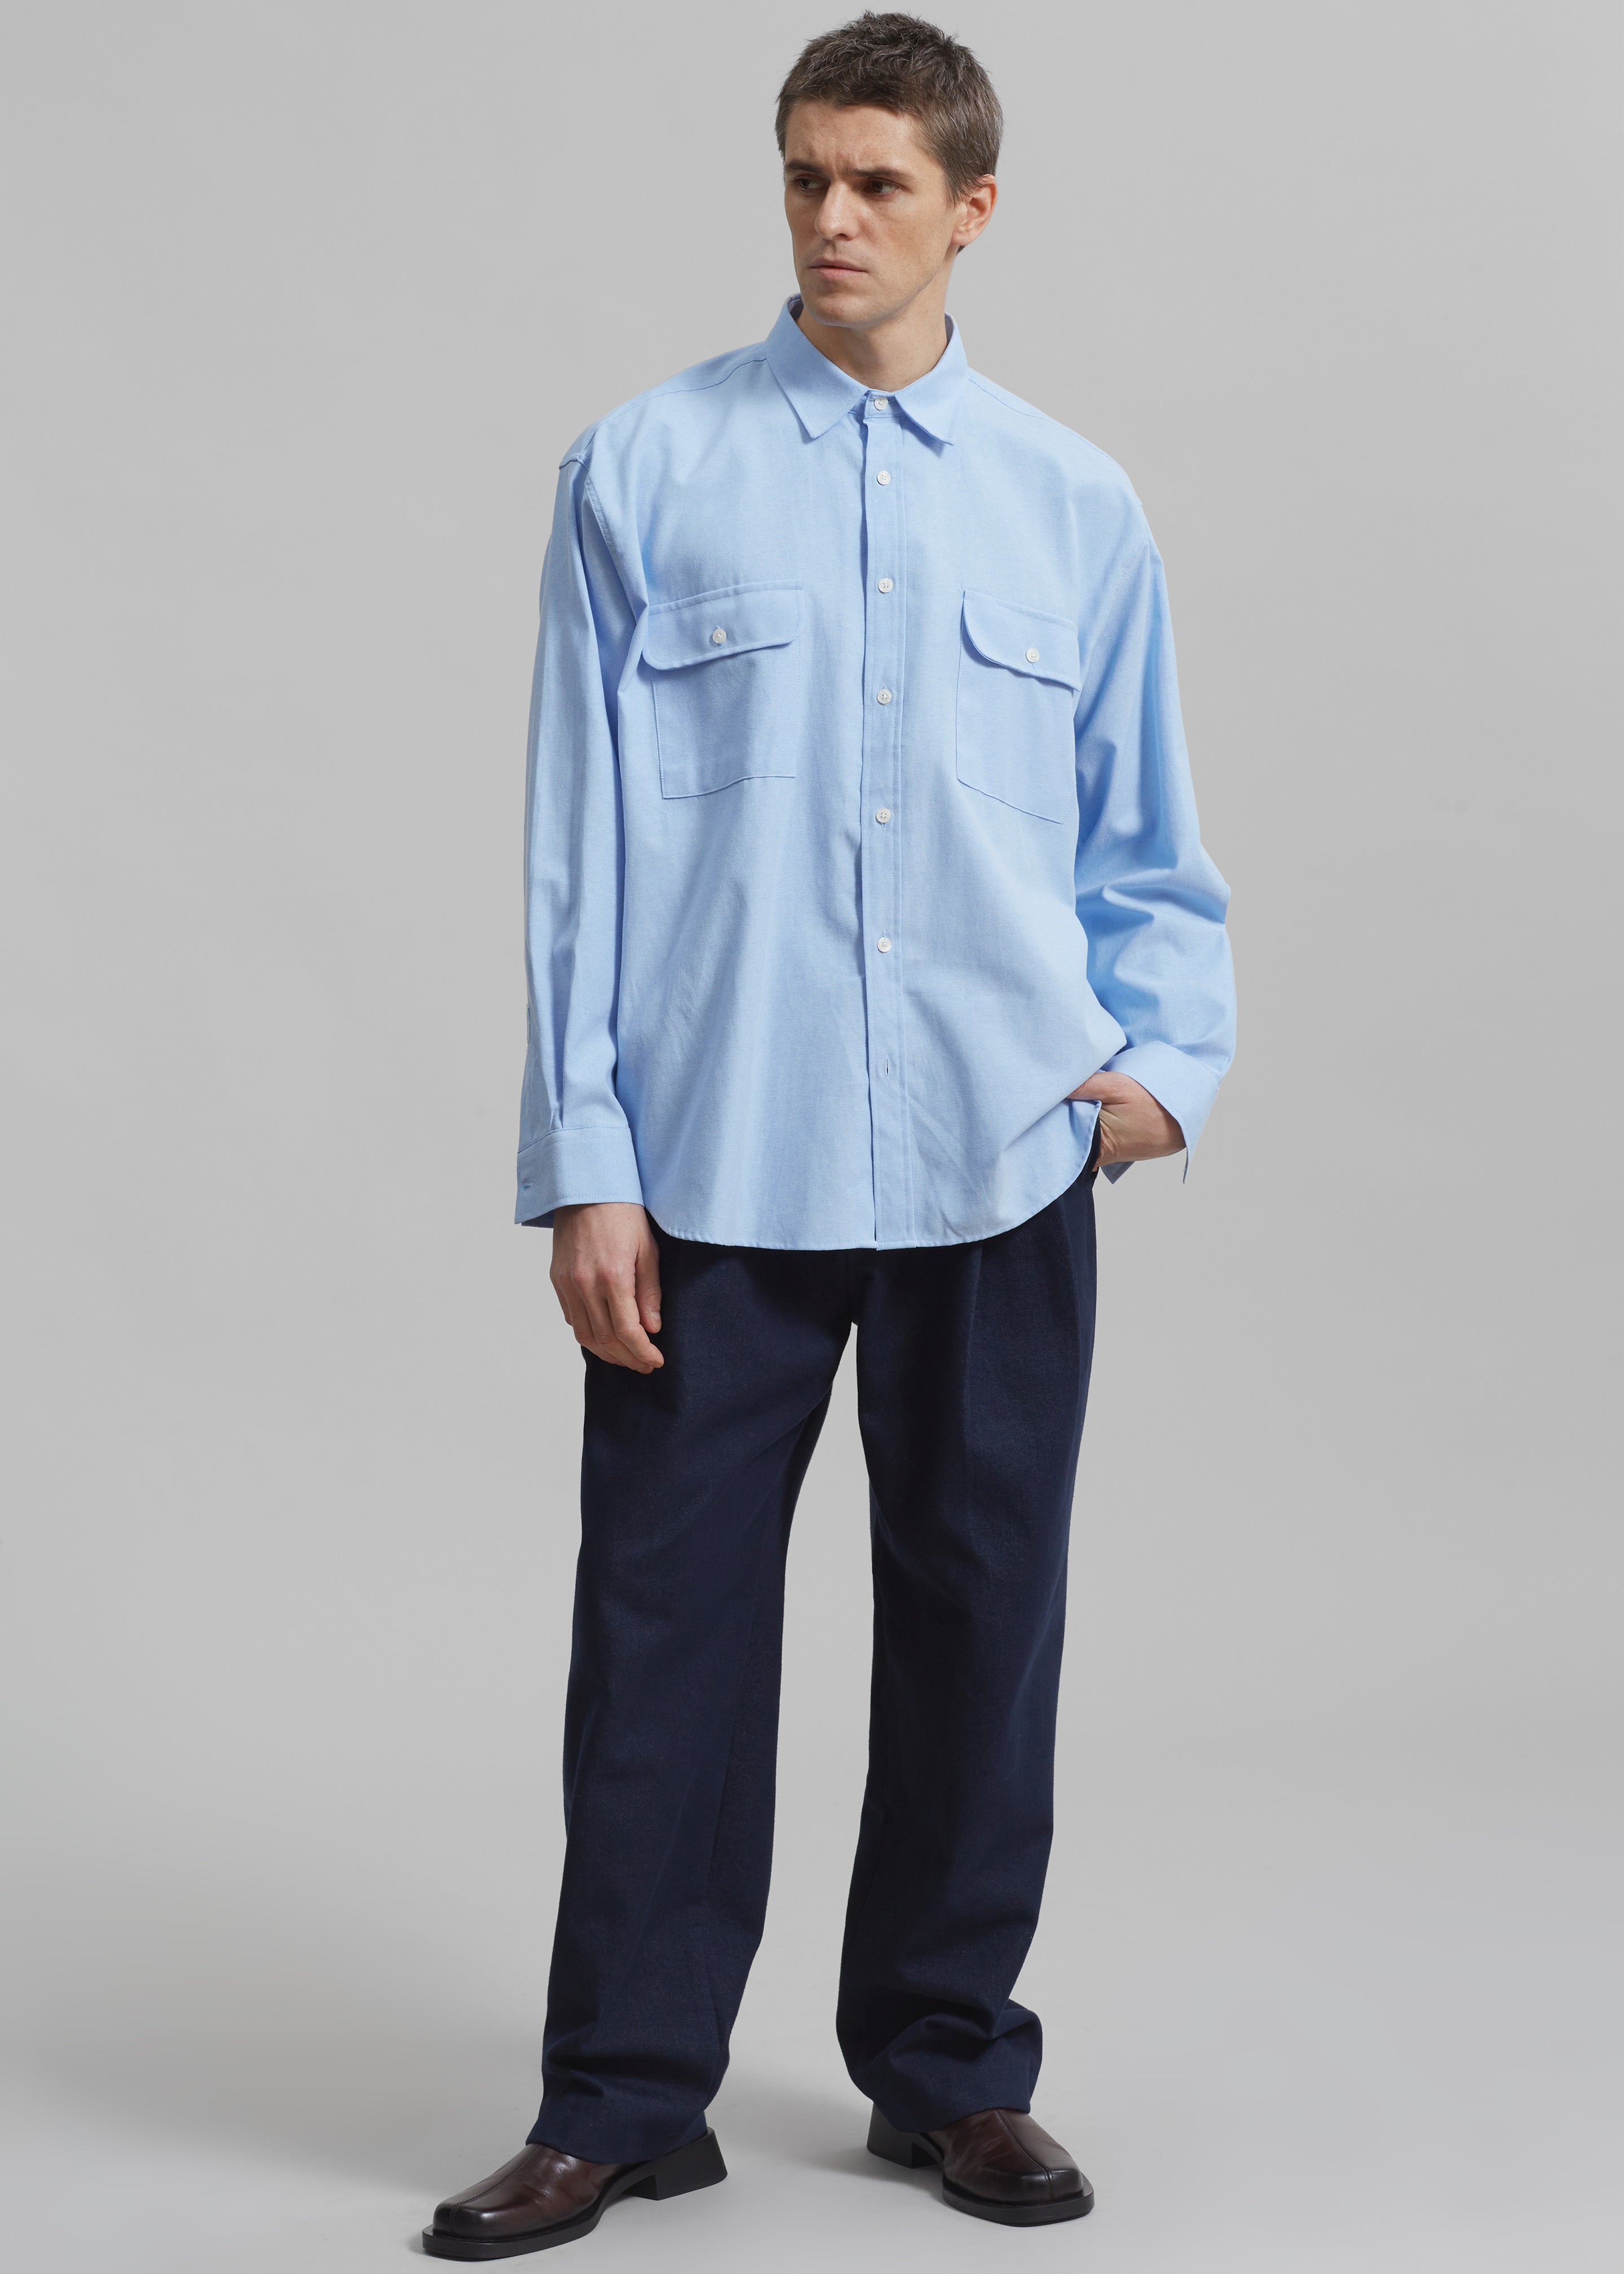 Alexander Button Up Shirt - Blue - 2